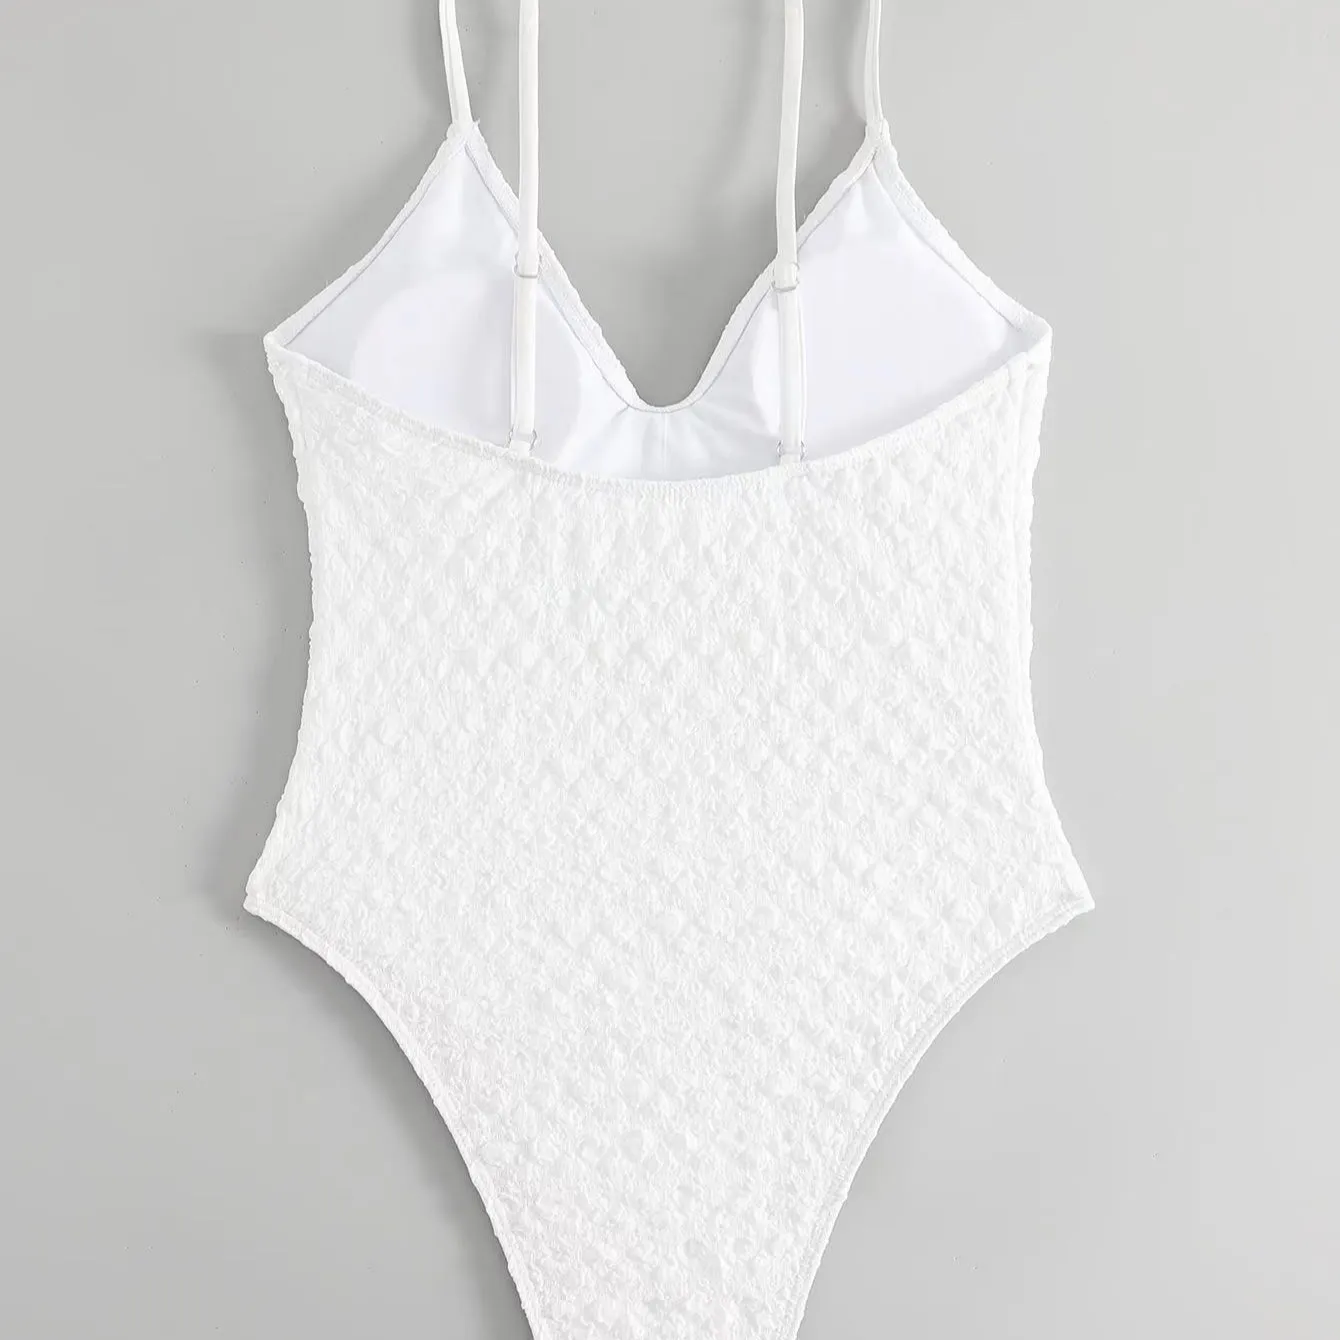 Venta caliente de la fábrica de China OEM Tabla de ropa de natación estampado corto traje de baño Bikini de gran tamaño traje de baño tendencia de moda marca al por mayor